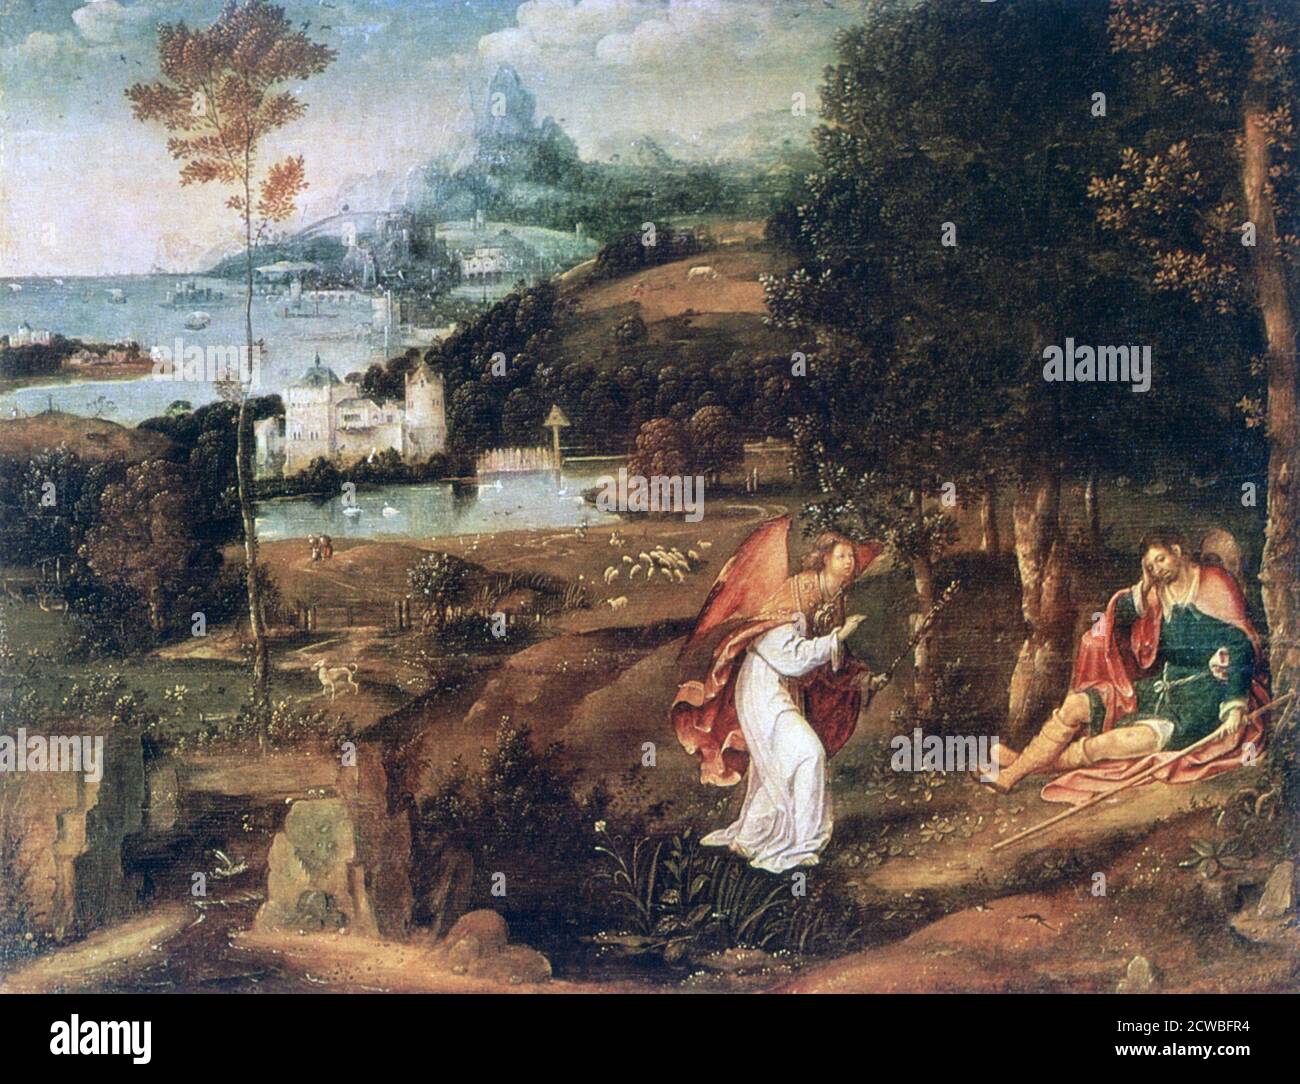 Paesaggio scena con Saint Roch', c1500-1524. Artista: Joachim Patinir. Joachim Patinir (1480-1524) è stato un pittore fiammingo rinascimentale di storia e soggetti paesaggistici. Foto Stock